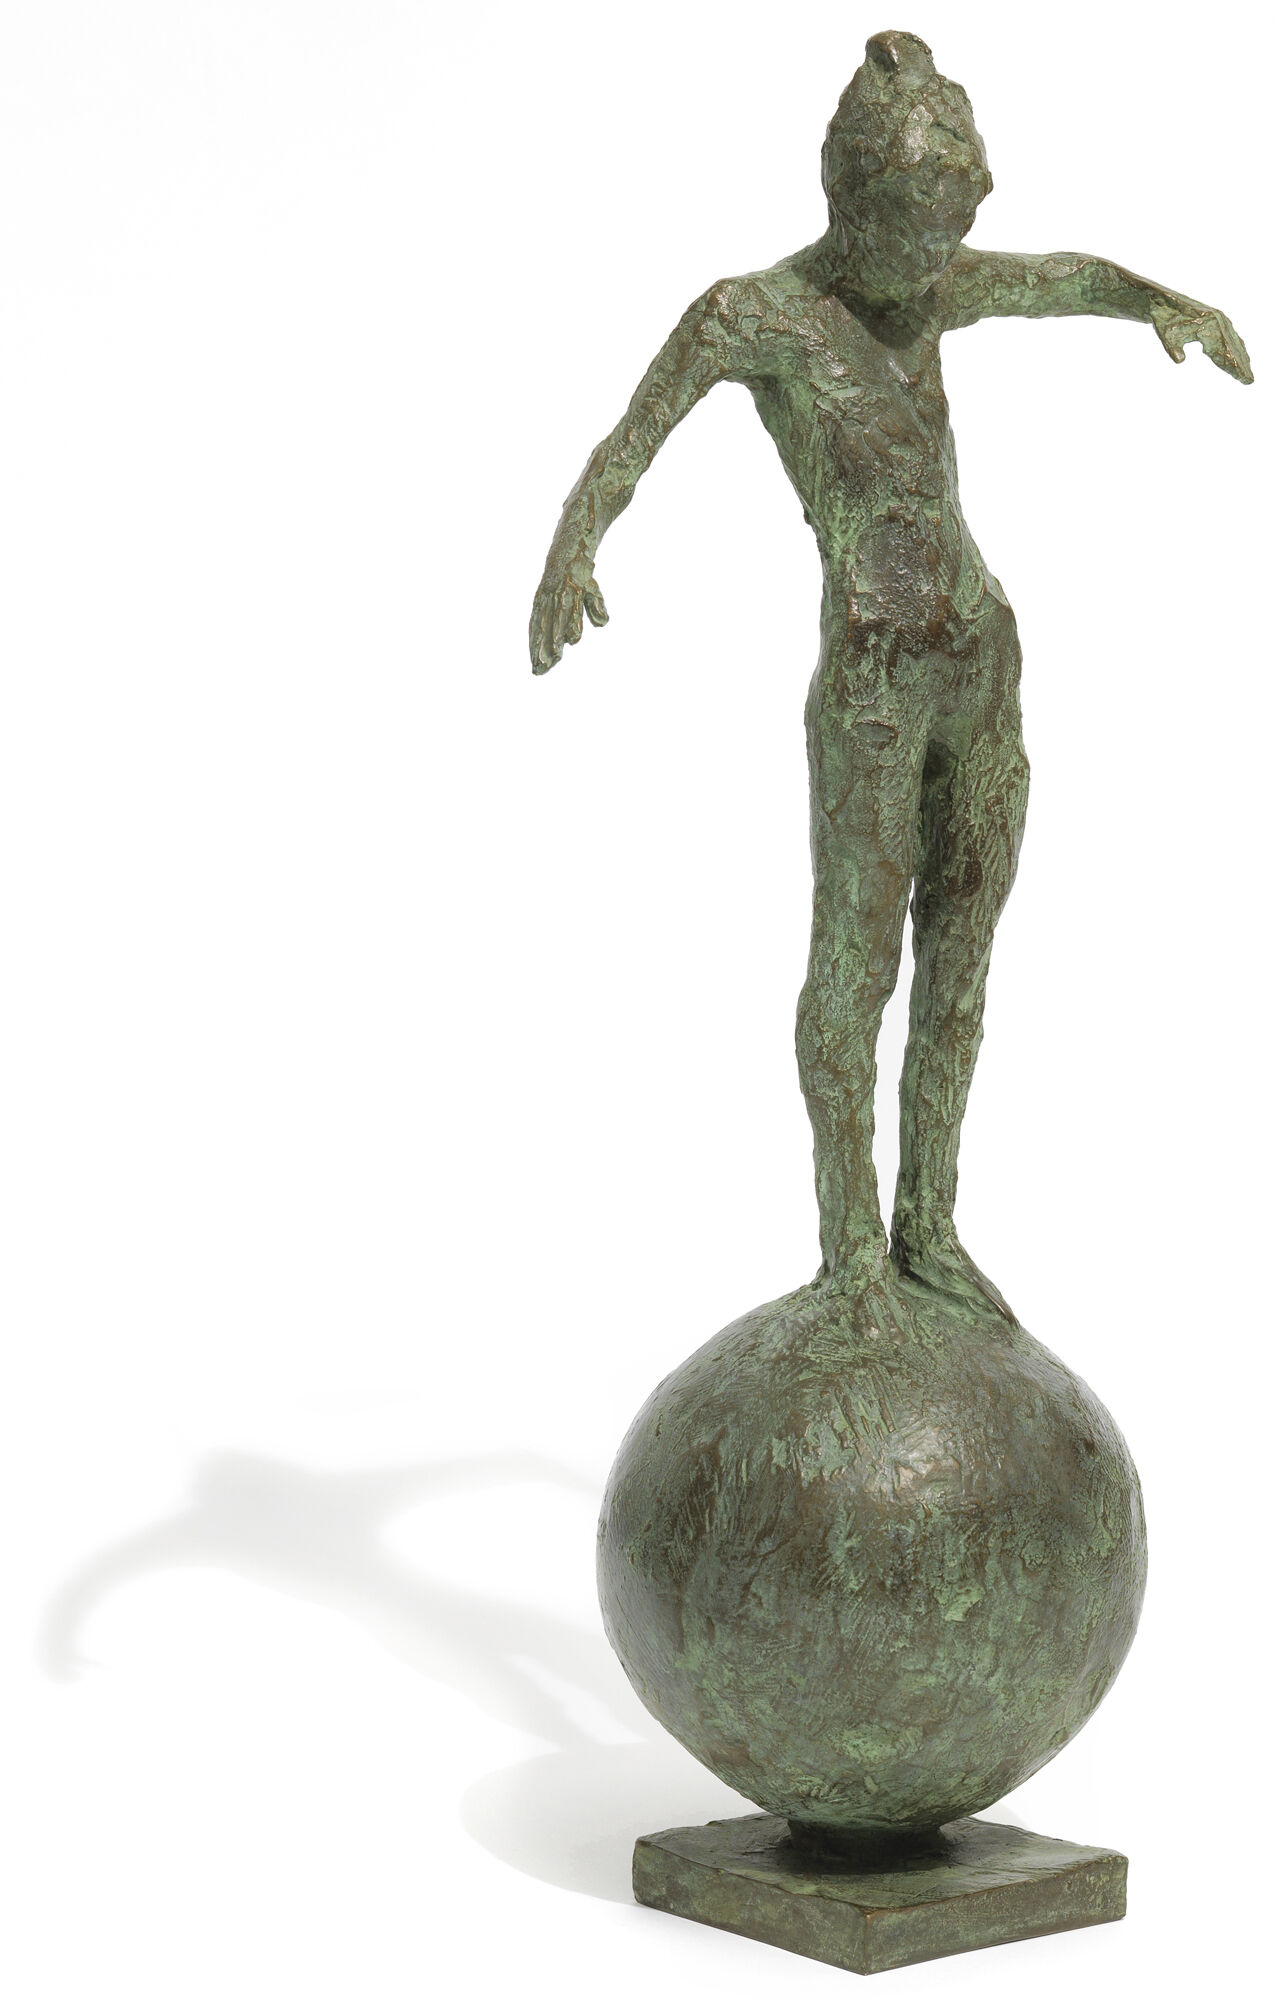 Skulptur "Lille balance" (2016), bronze von Thomas Jastram